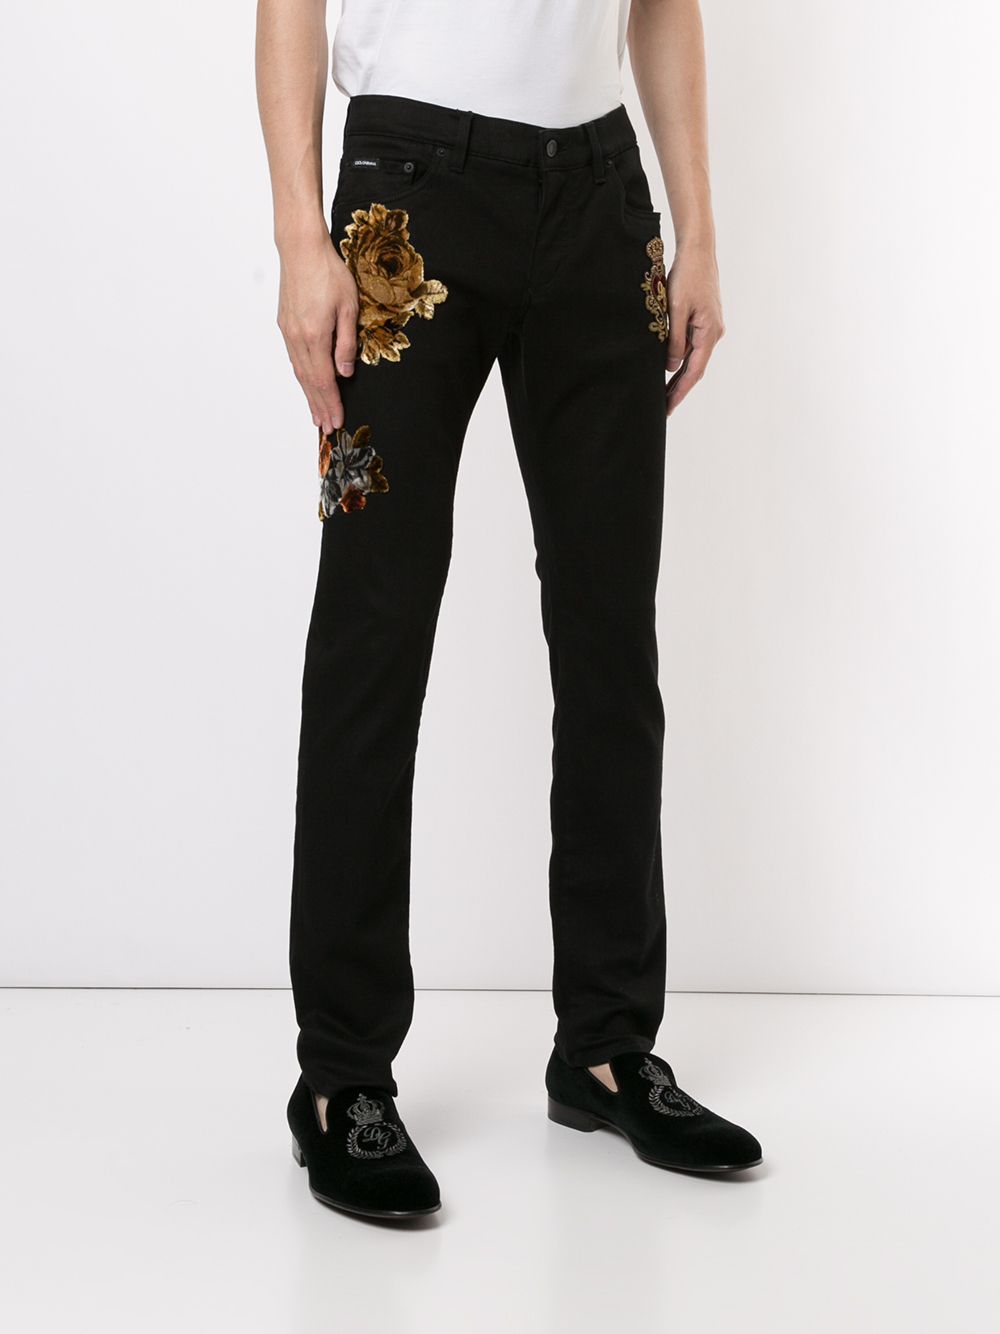 фото Dolce & gabbana джинсы скинни с цветочным декором